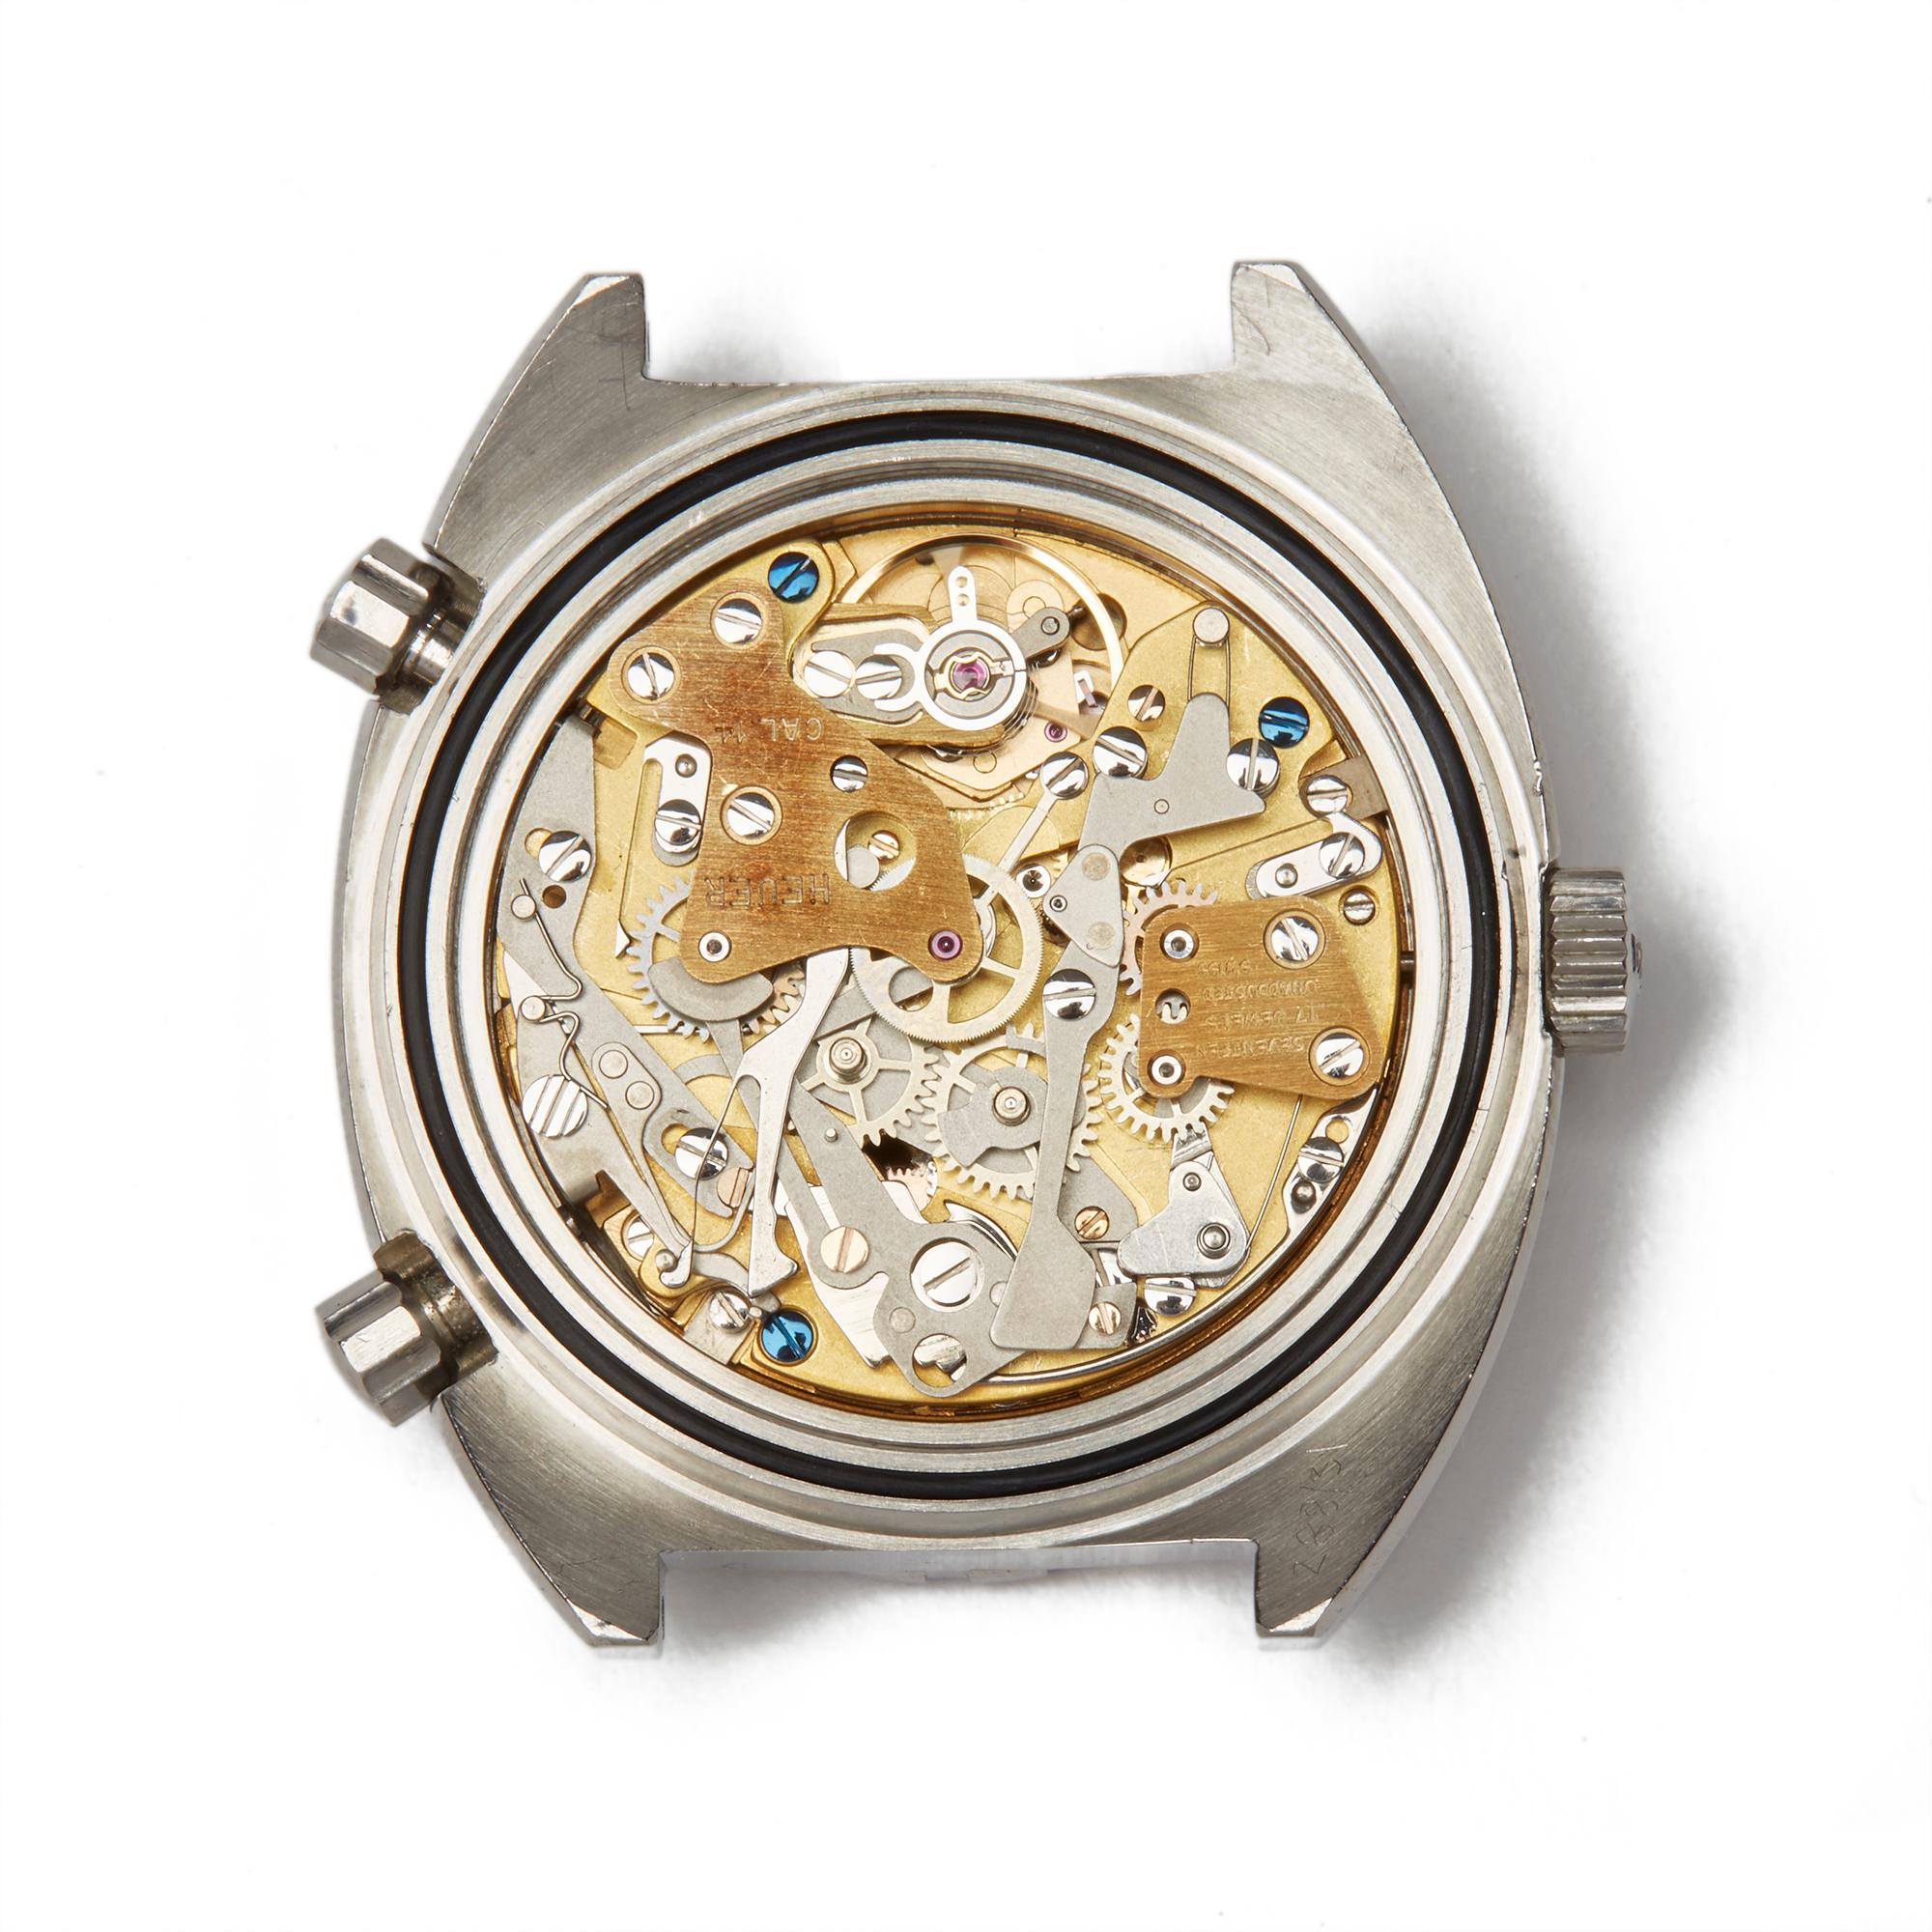 Heuer Autavia GMT Stainless Steel 11630 Wristwatch 2